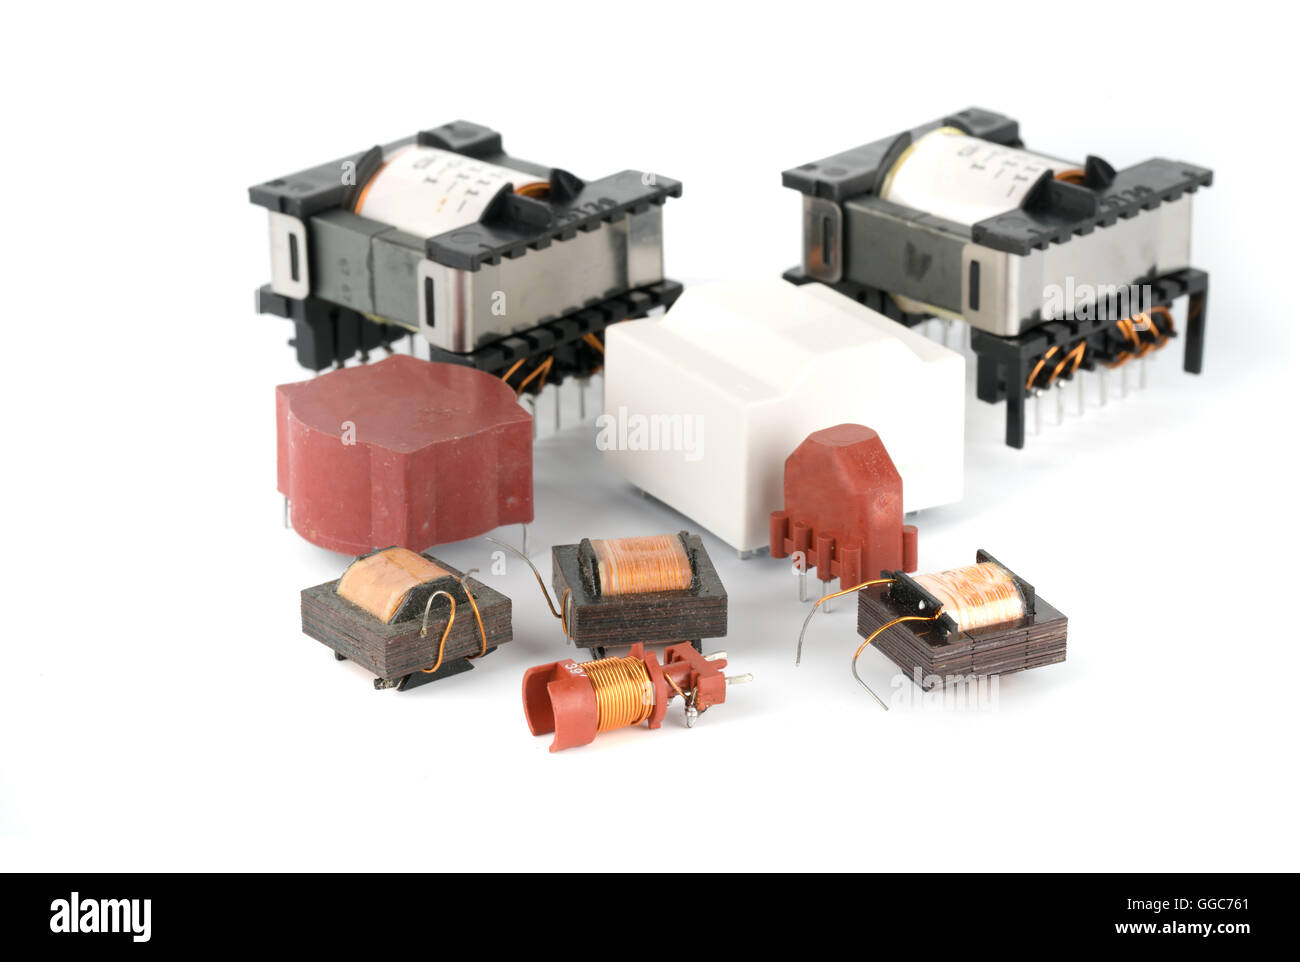 La ferrita elektronik transformador para dispositivos electrónicos Foto de stock